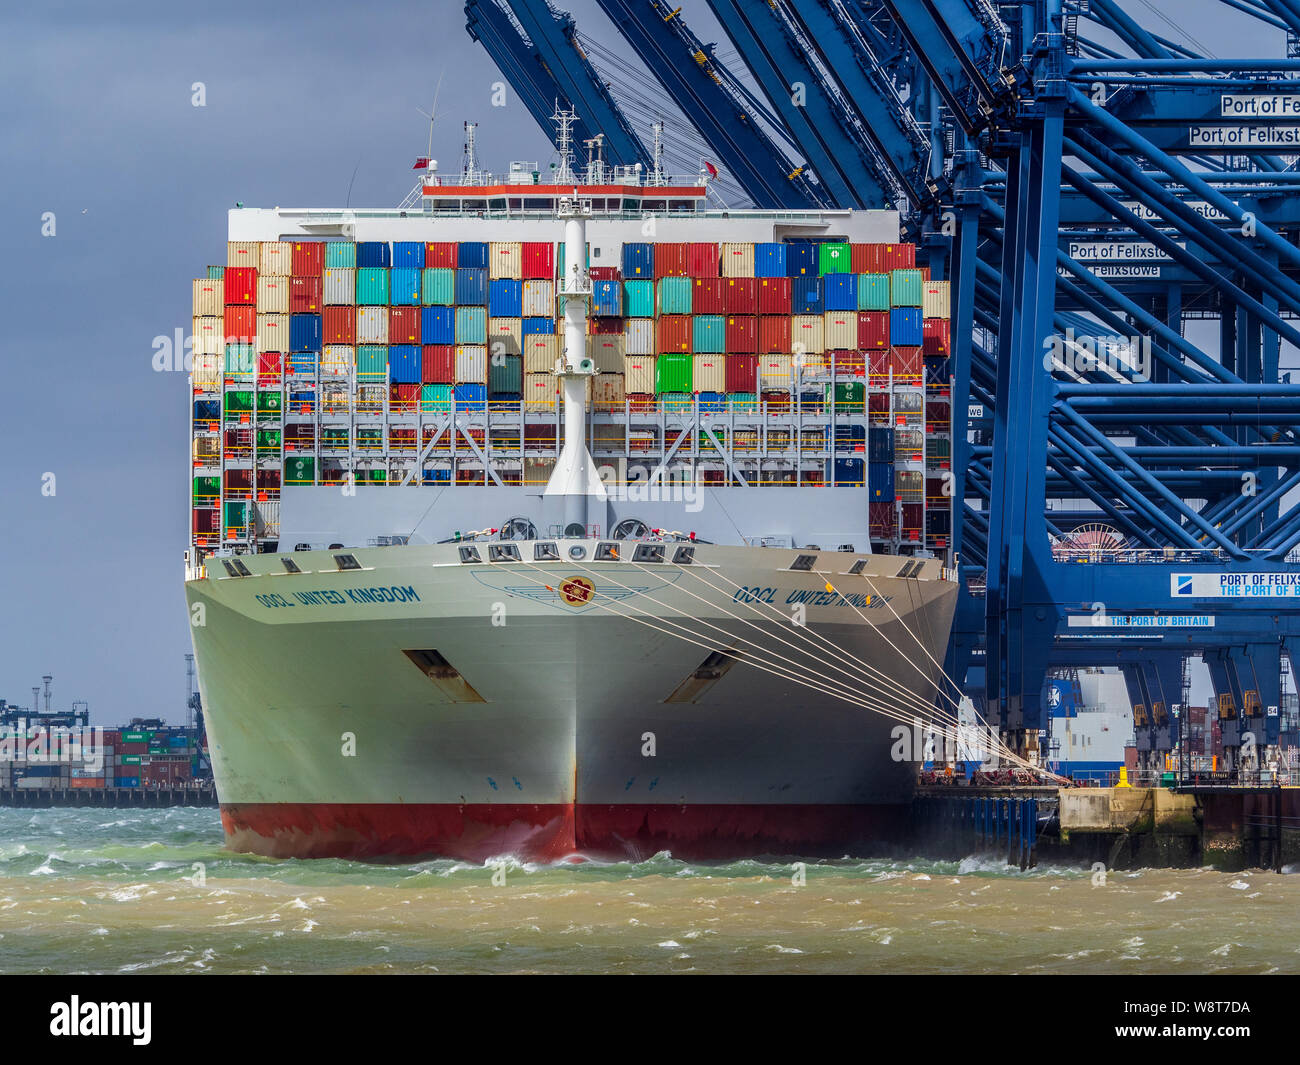 OOCL United Kingdom Vessel dockte am Felixstowe Port an, um Container zu laden und zu entladen. OOCL ist eine in Hongkong ansässige Schiffahrtsgesellschaft. Stockfoto